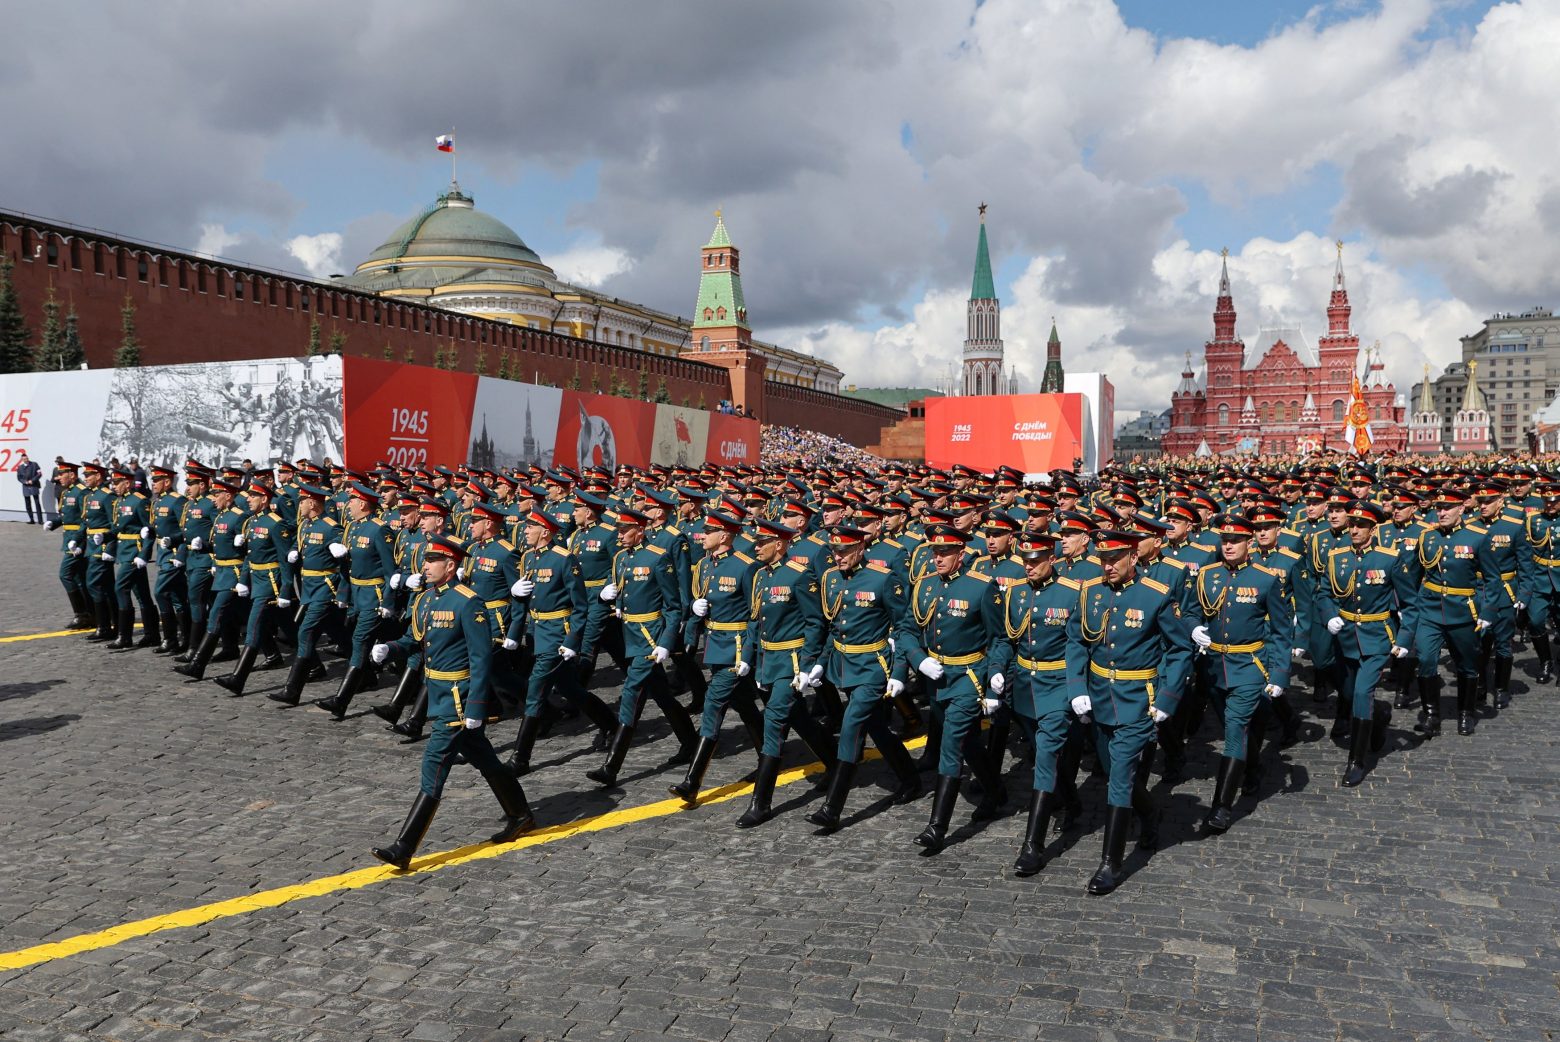 Μόσχα: «Επίδειξη δύναμης» με 11.000 στρατιώτες στην κόκκινη πλατεία [εικόνες]